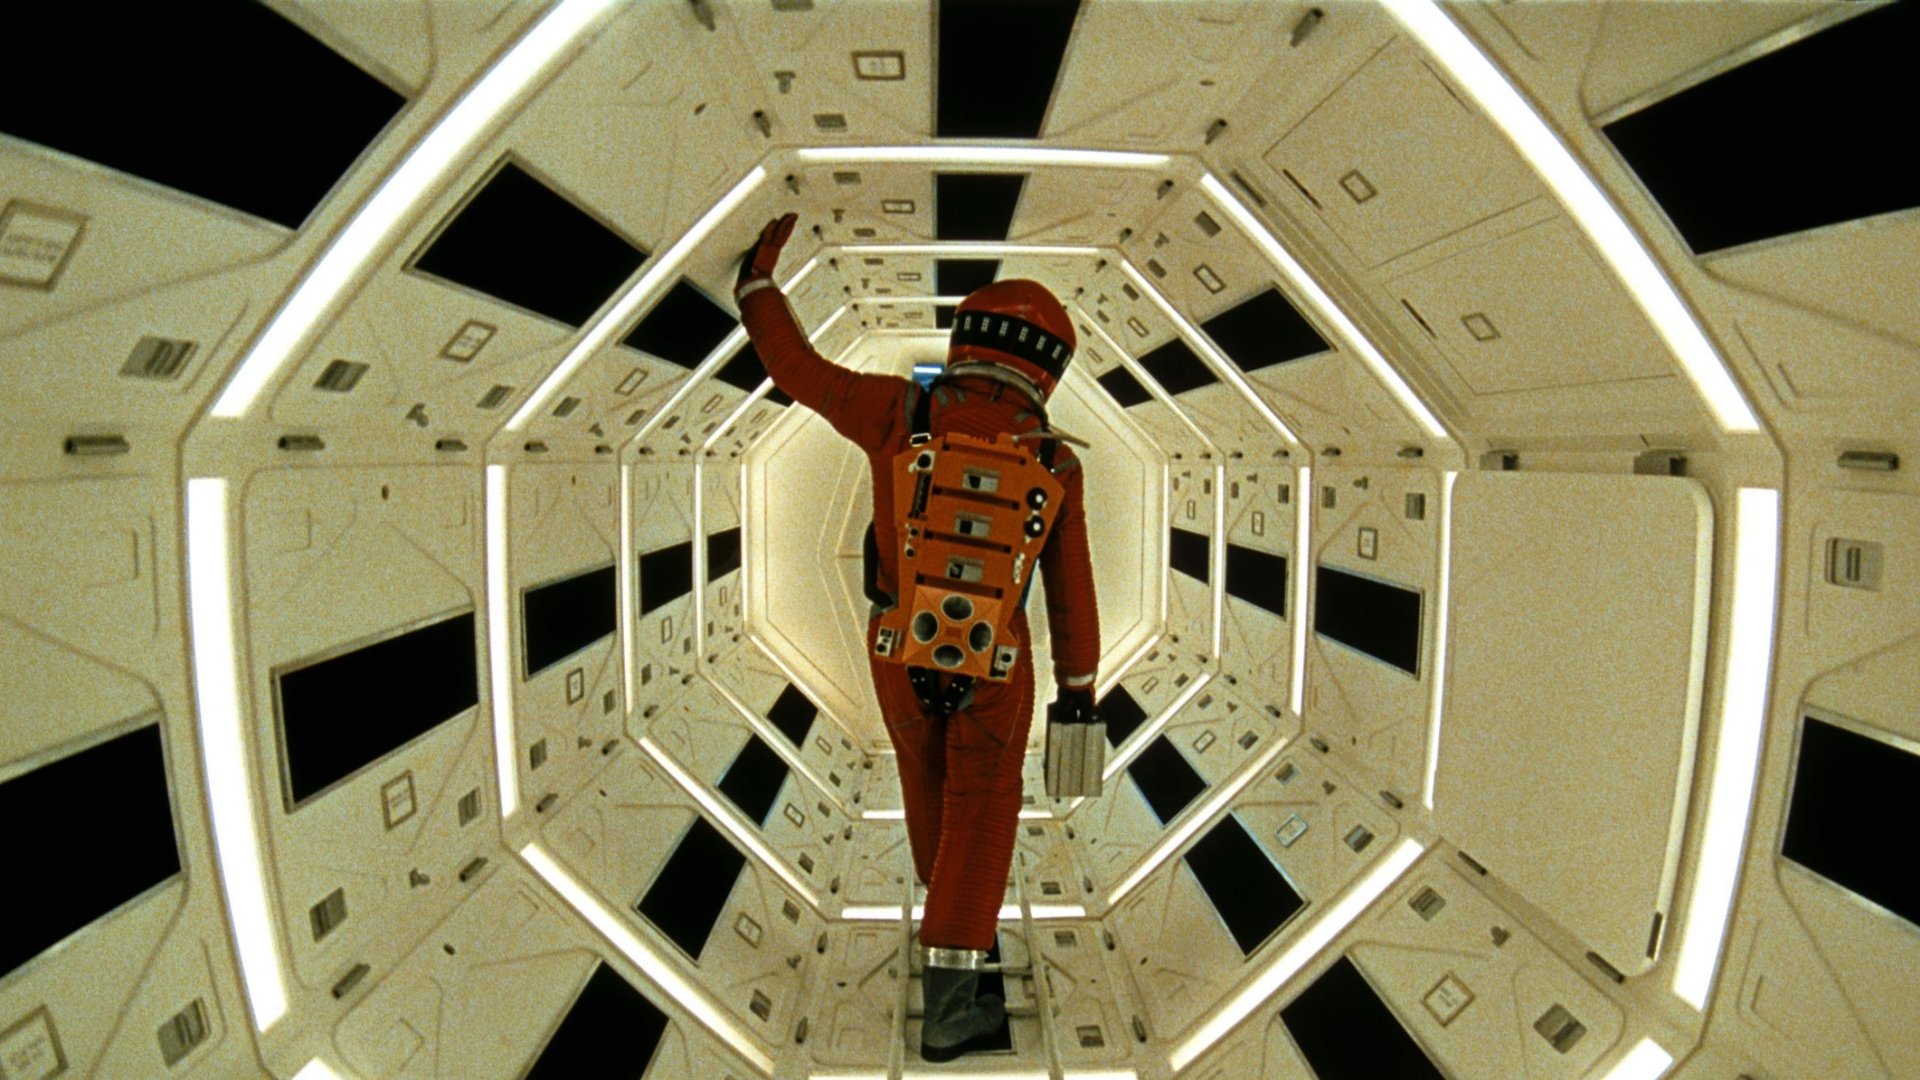 2001: a space odyssey, movie